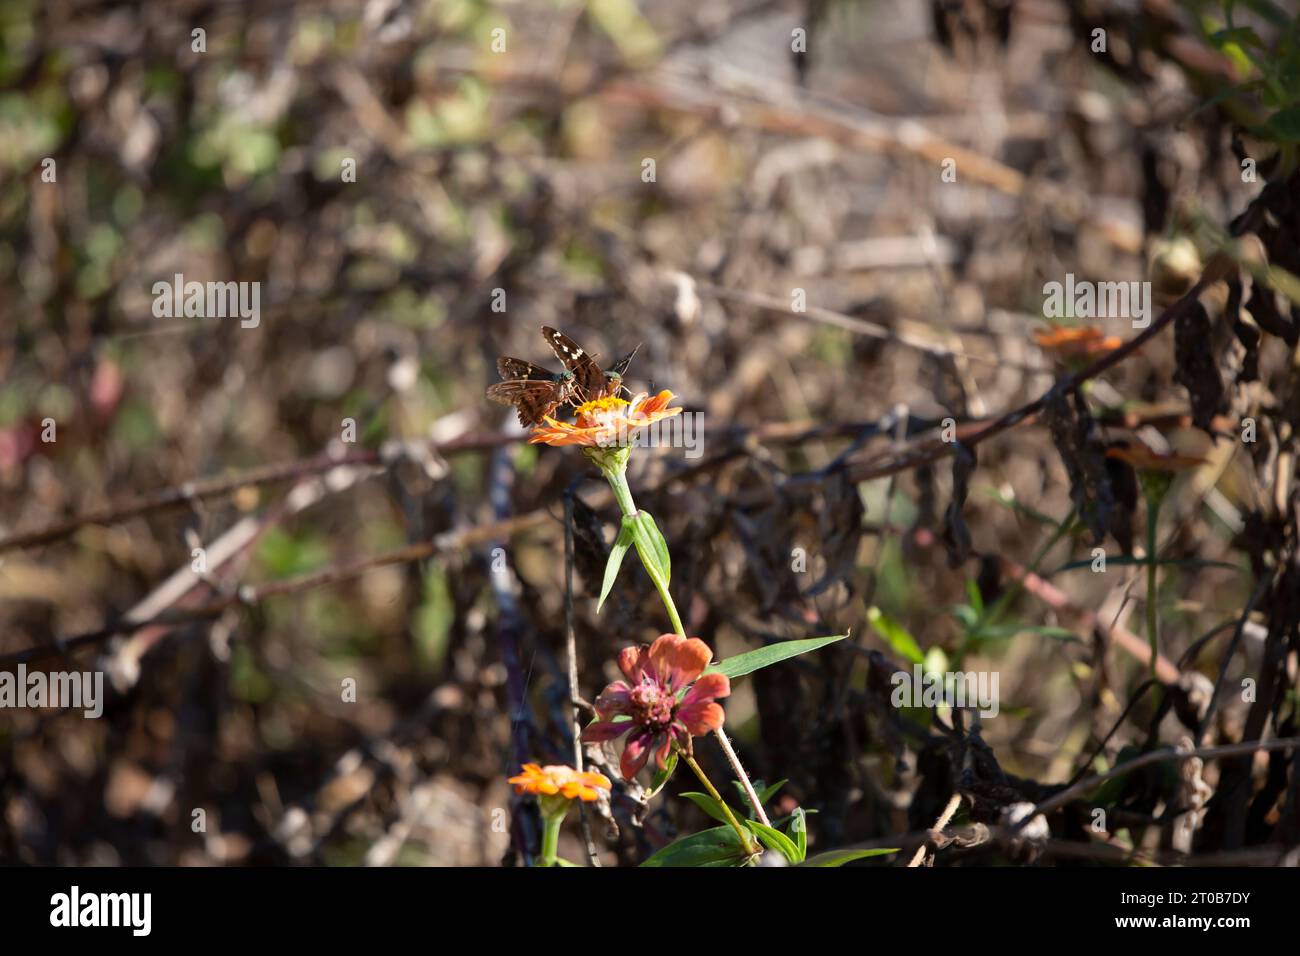 Due skipper dalla coda lunga (Urbanus proteus) su un fiore di zinnia Foto Stock